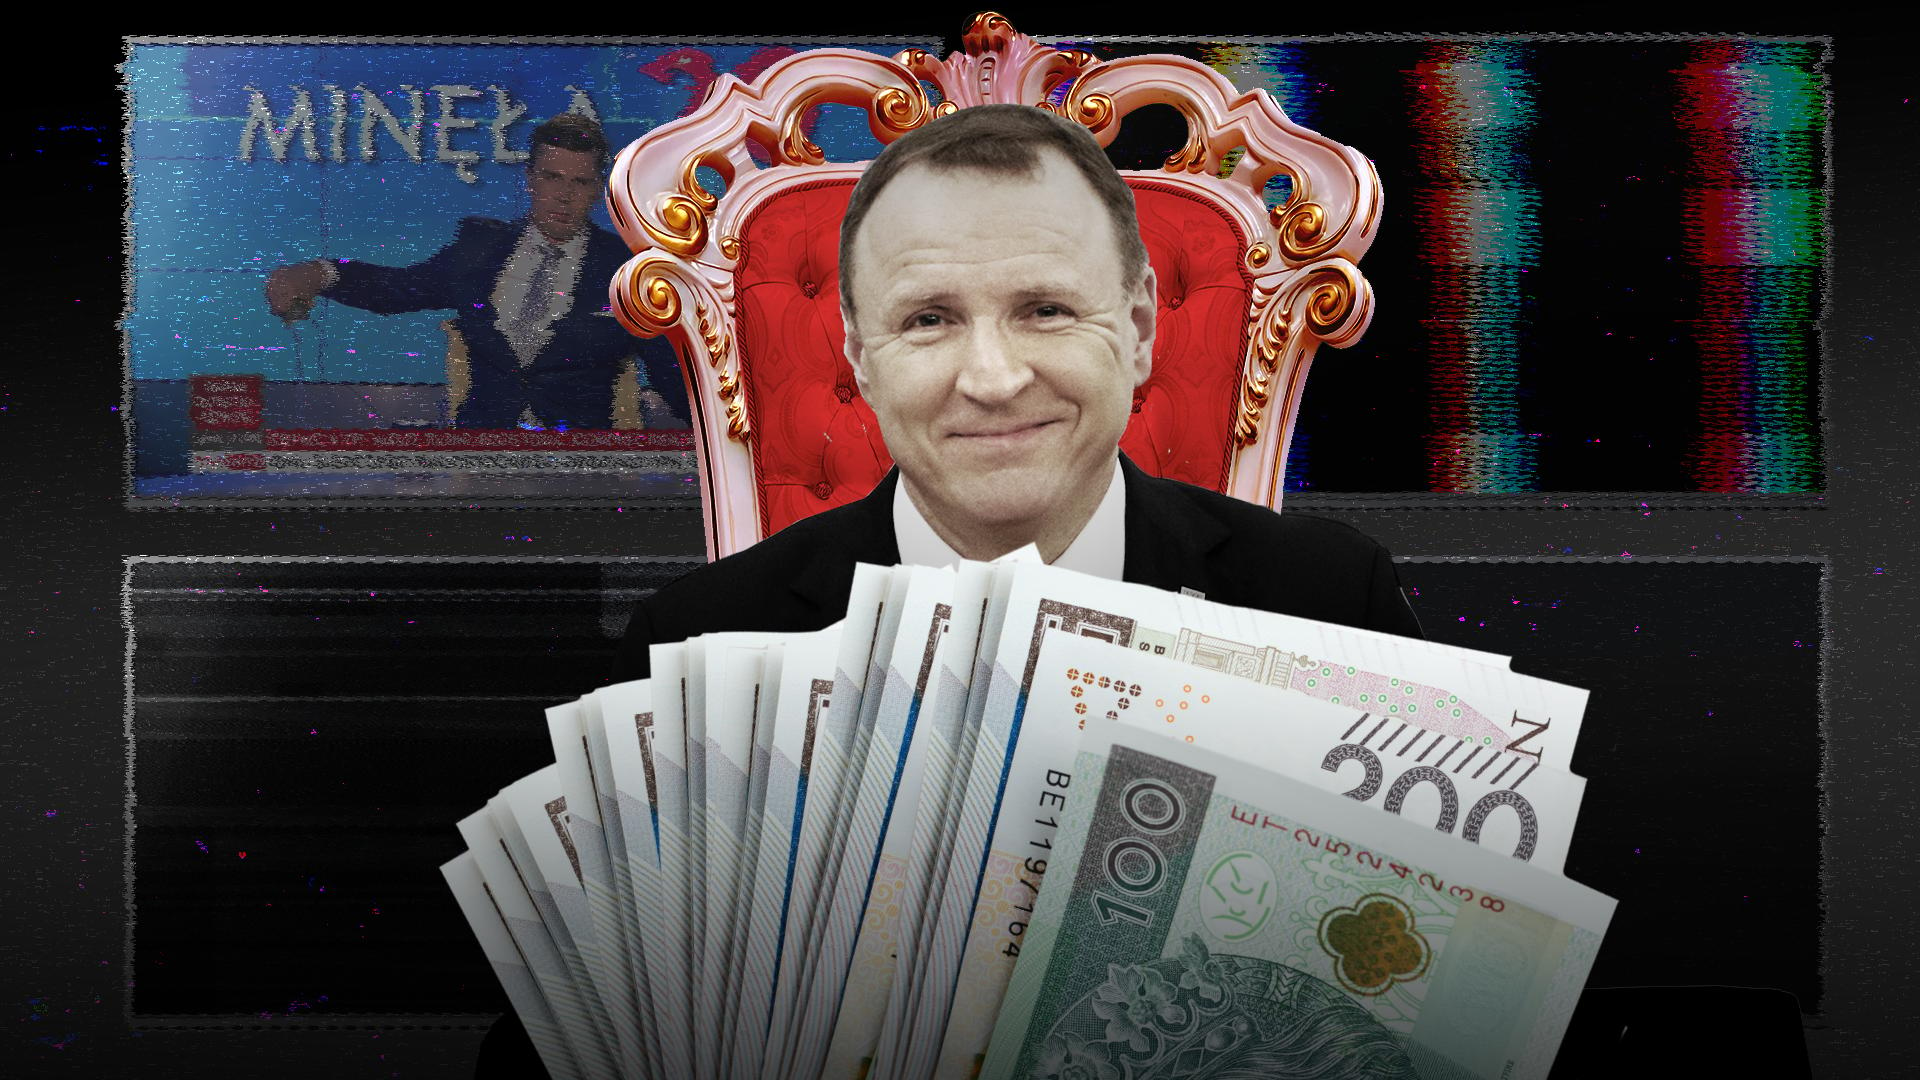 Prezes TVP Jacek Kursi siedzi na tronie otoczony pieniędzmi